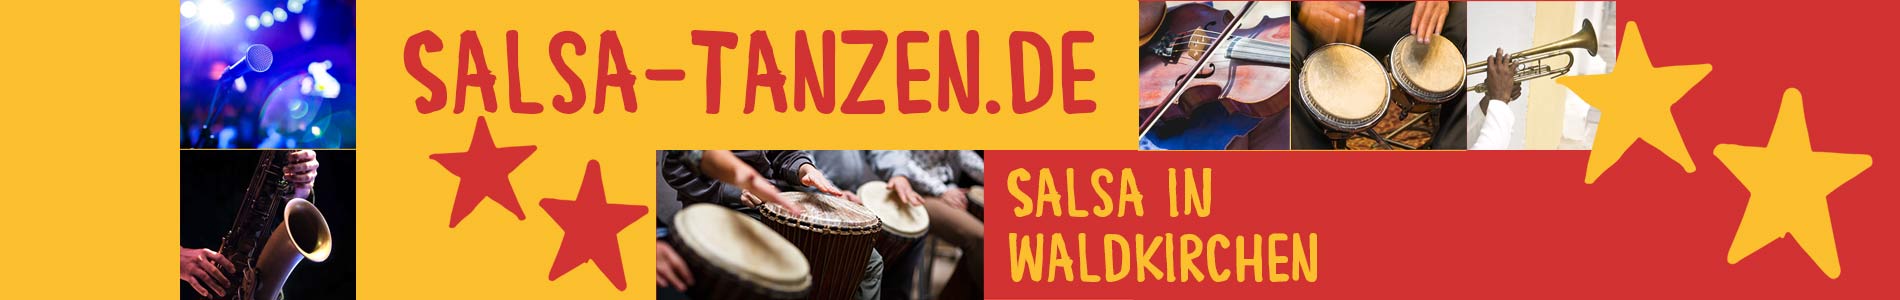 Salsa in Waldkirchen – Salsa lernen und tanzen, Tanzkurse, Partys, Veranstaltungen